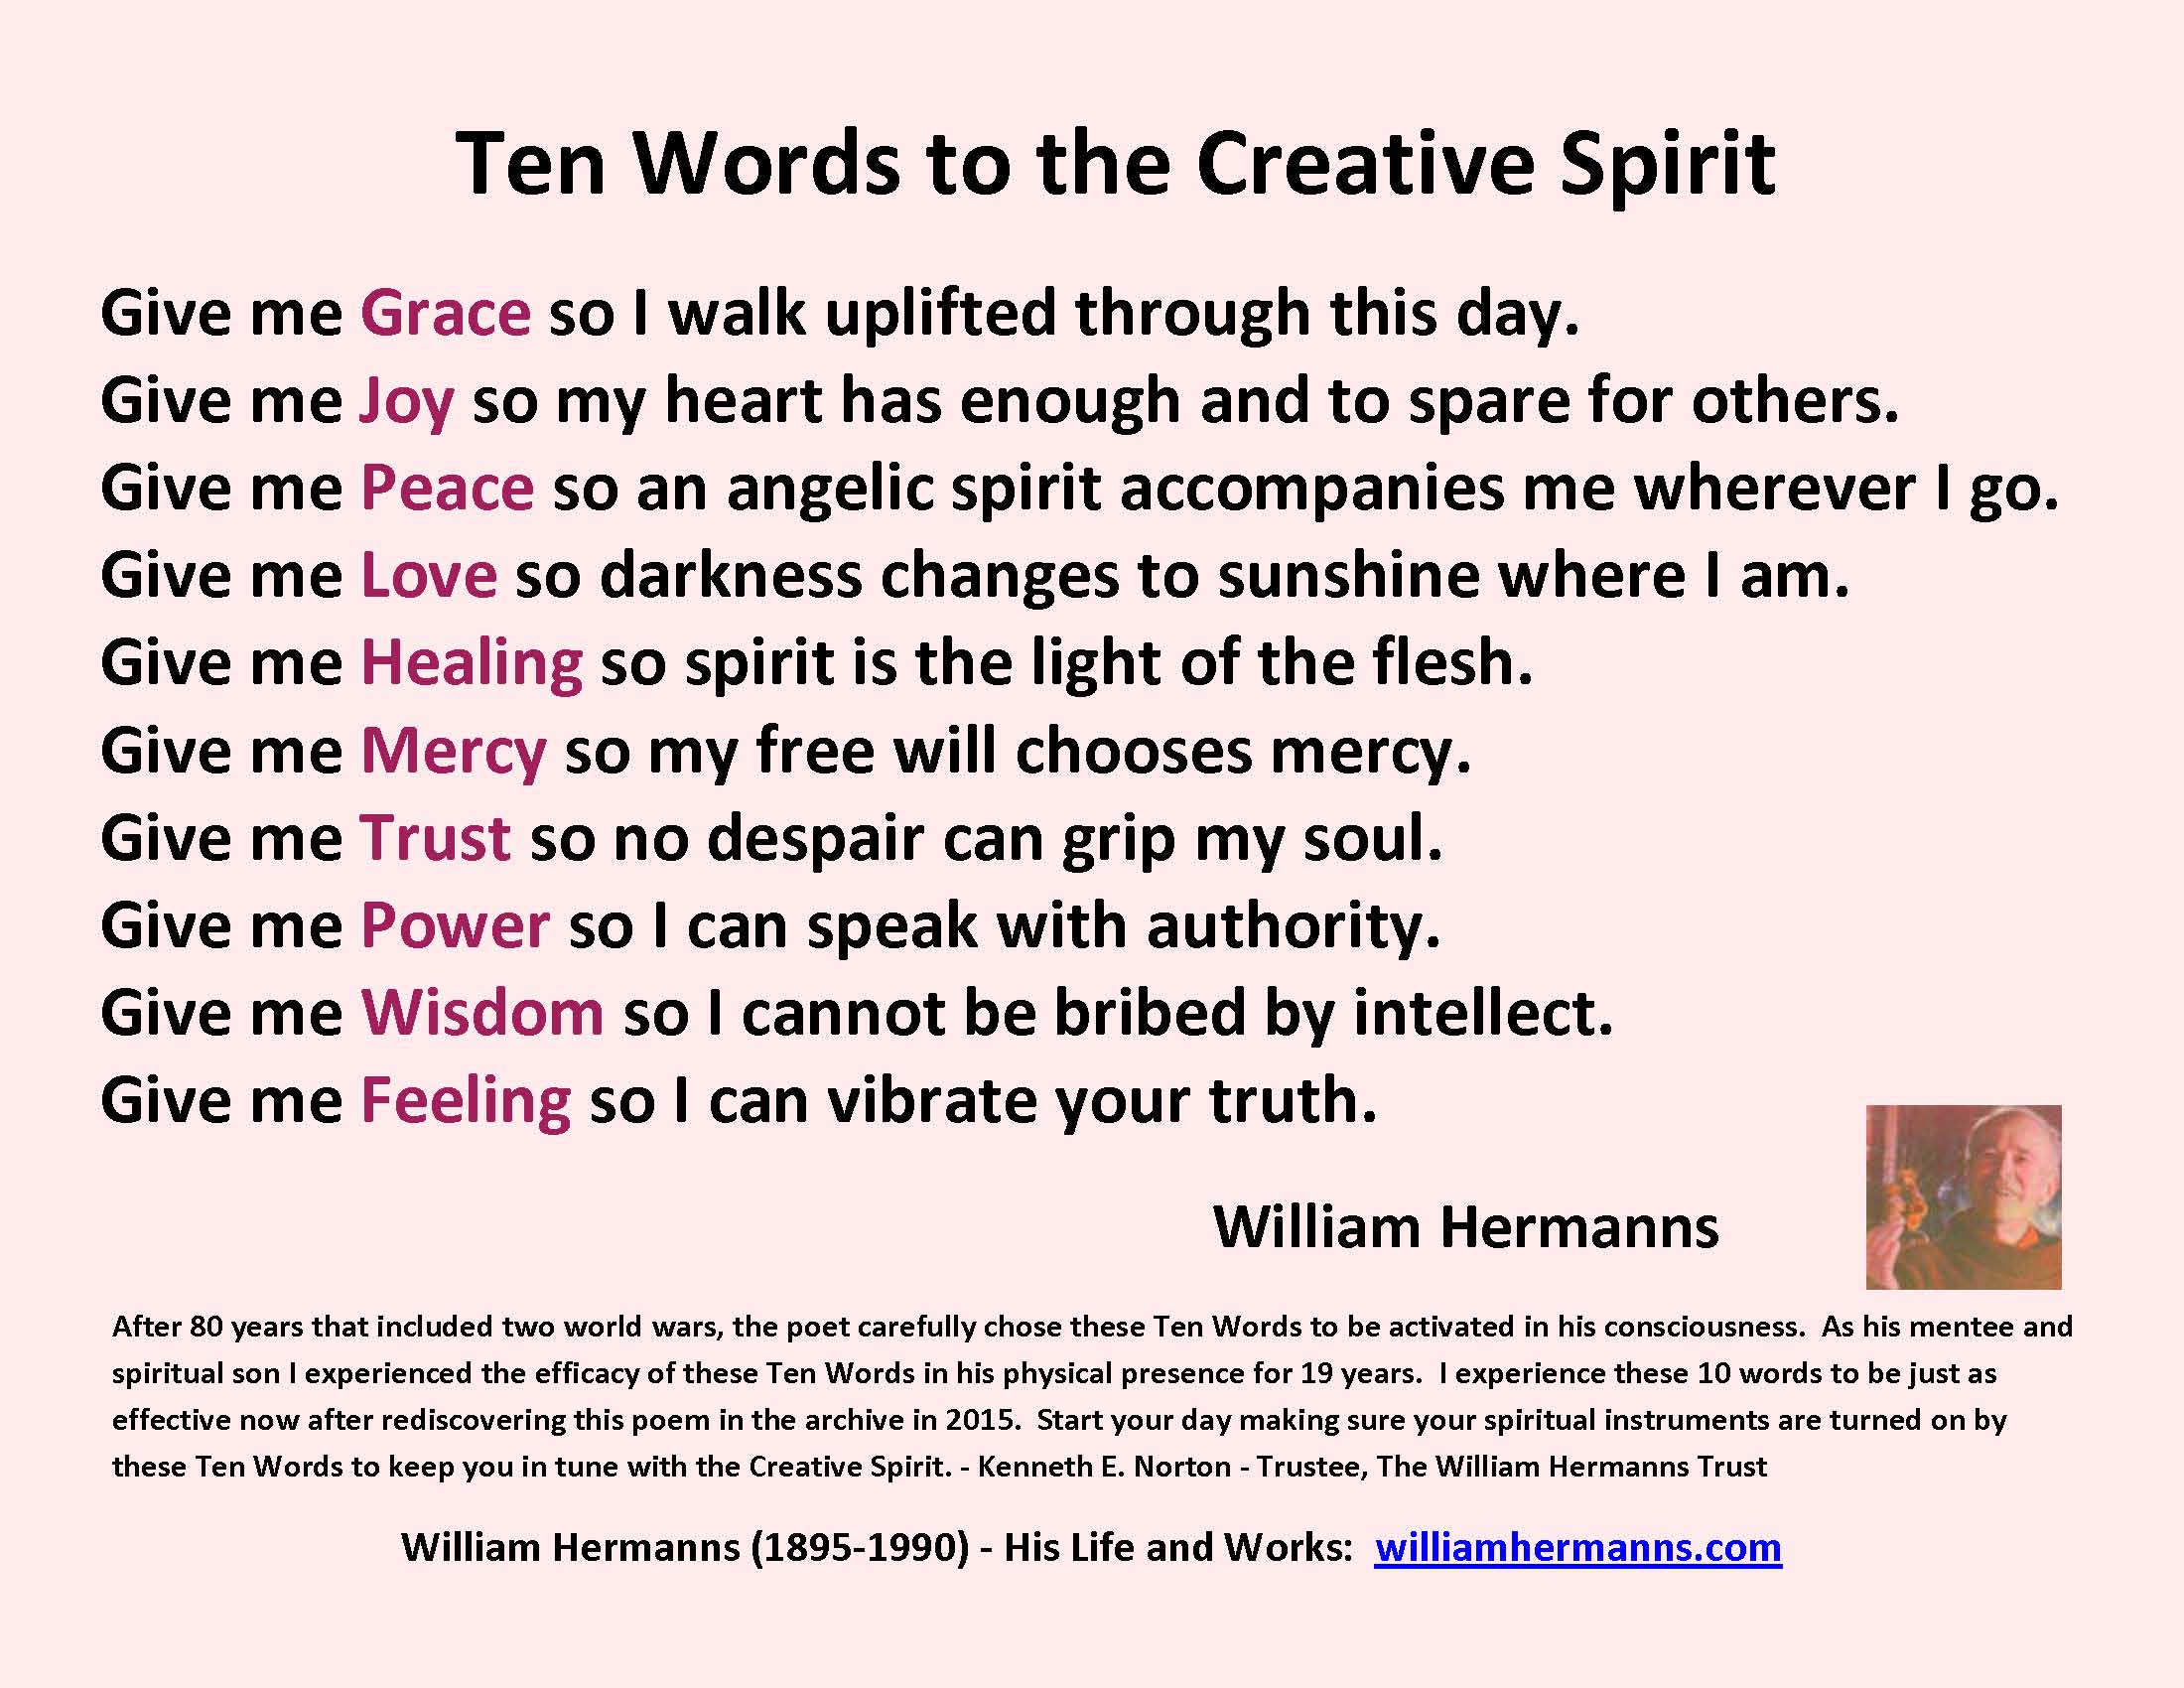 Ten words the Creative Spriit by William Hermanns